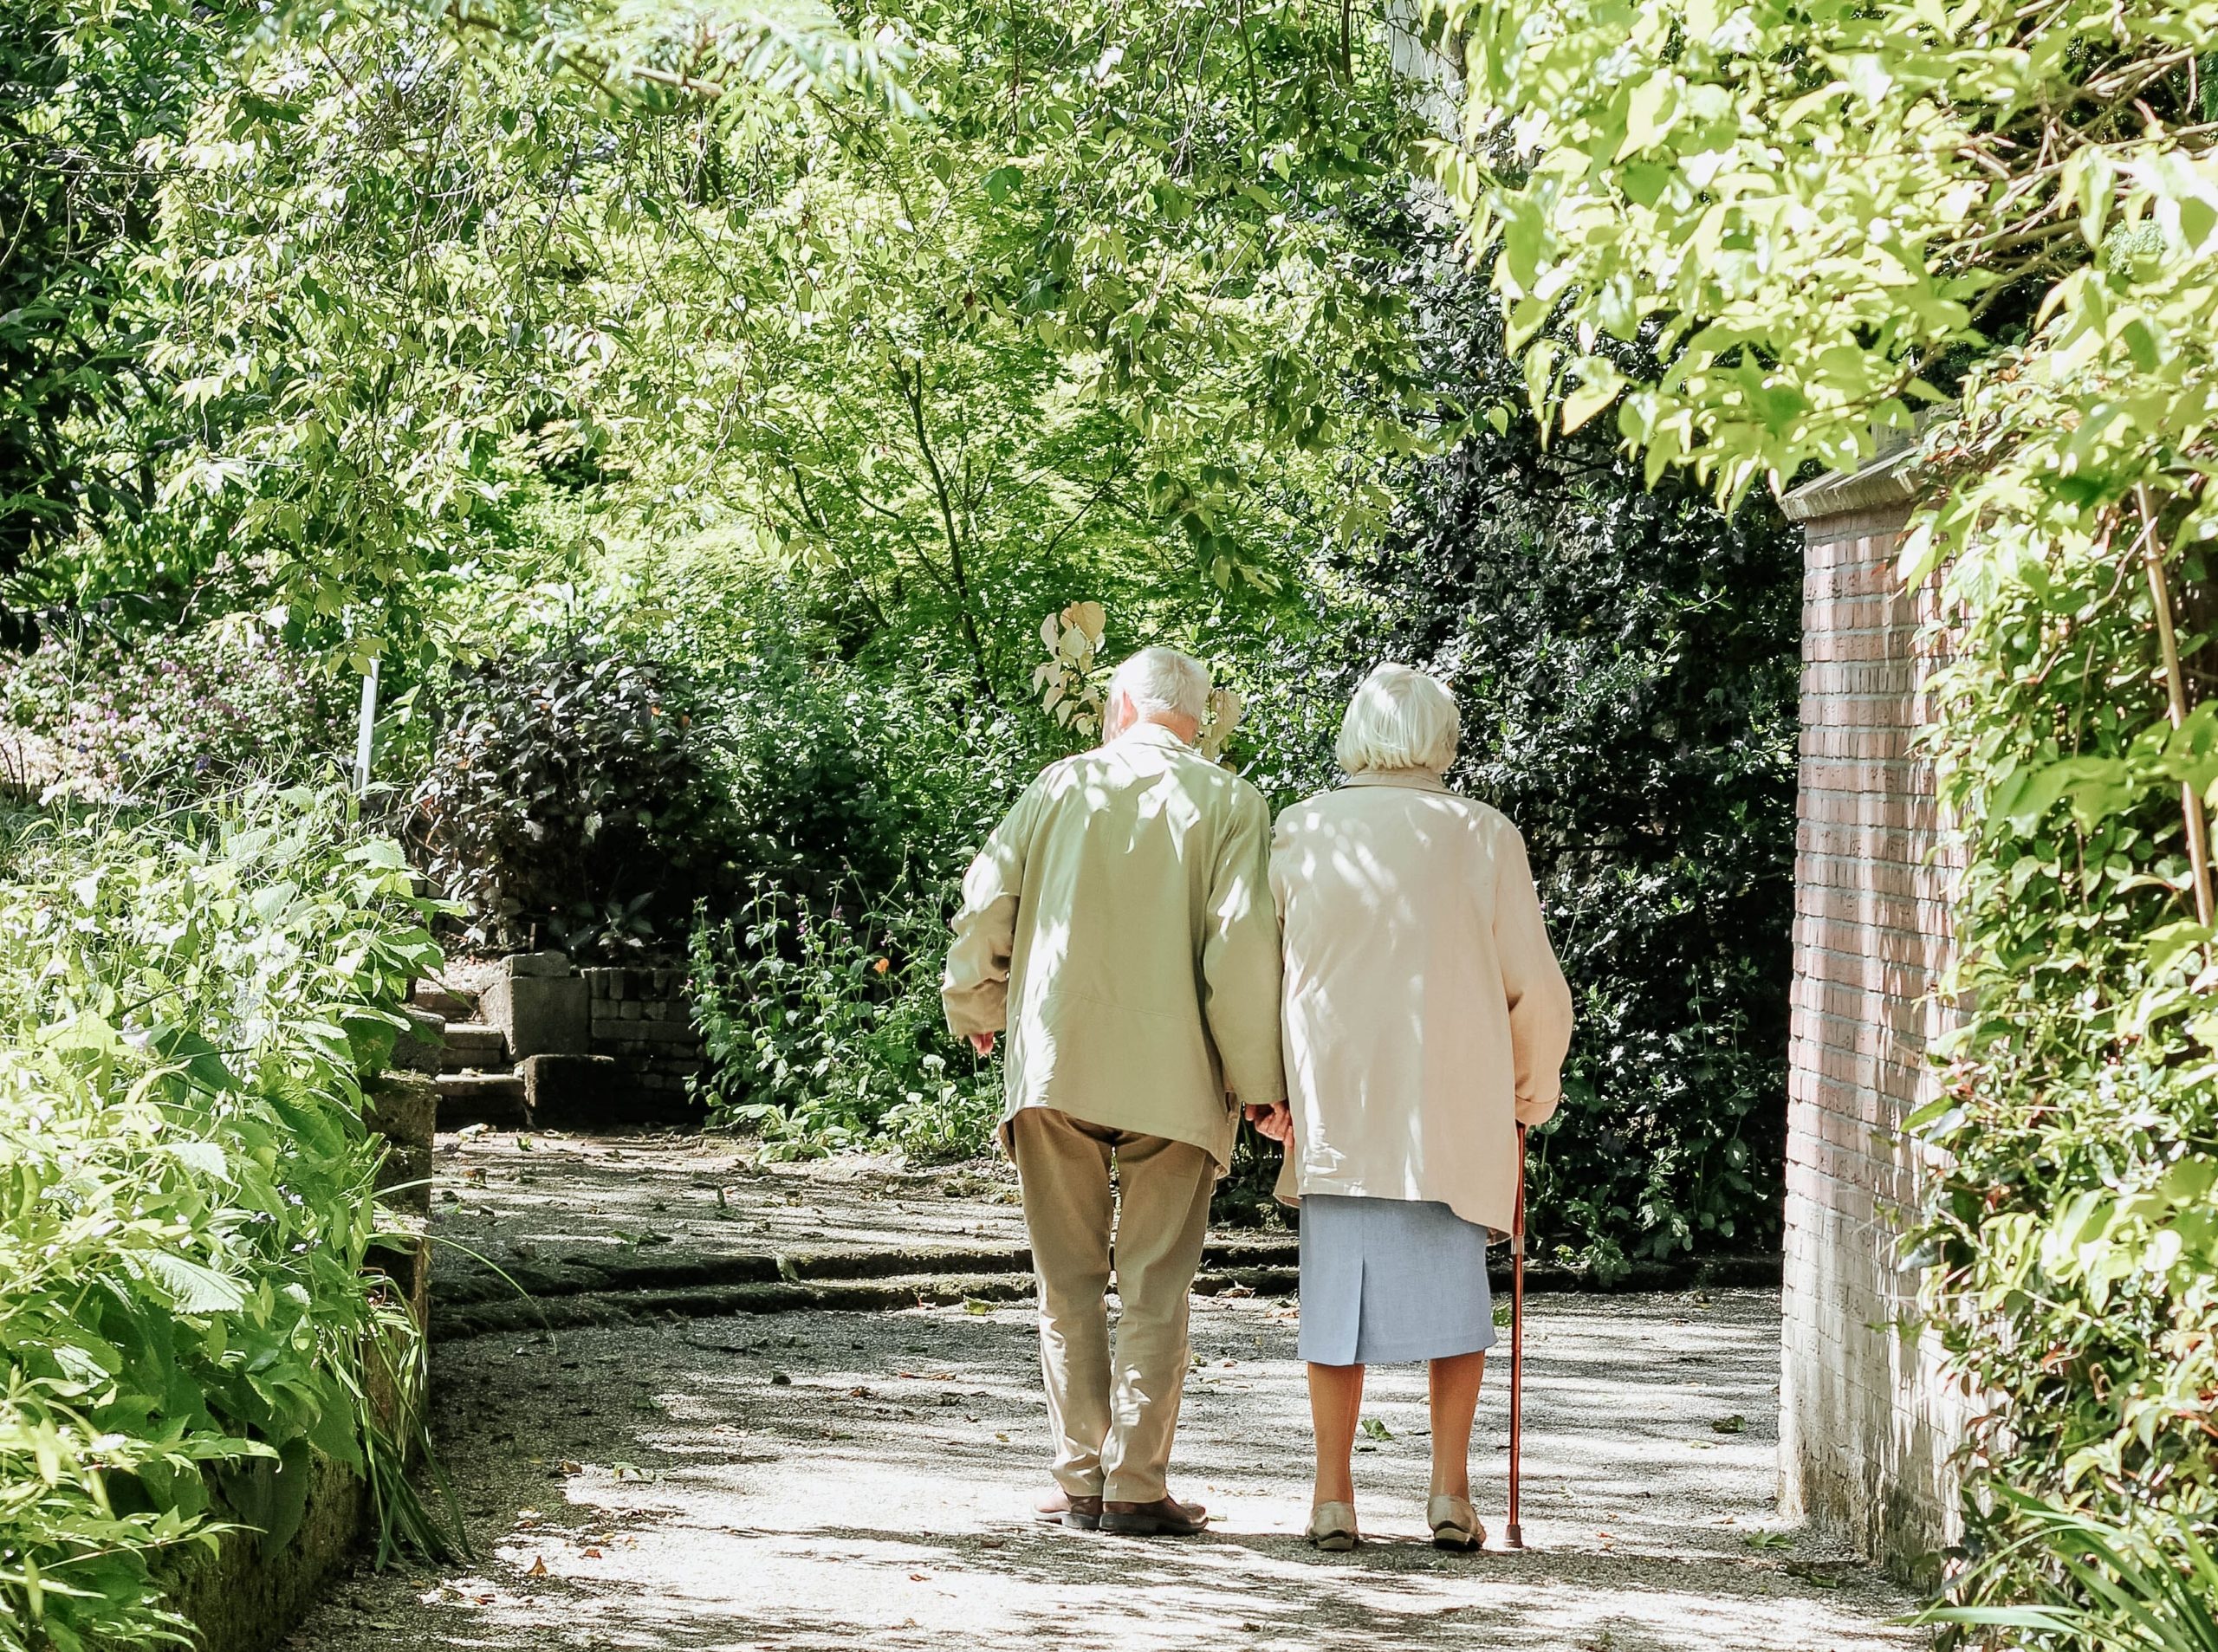 elderly couple walking among trees